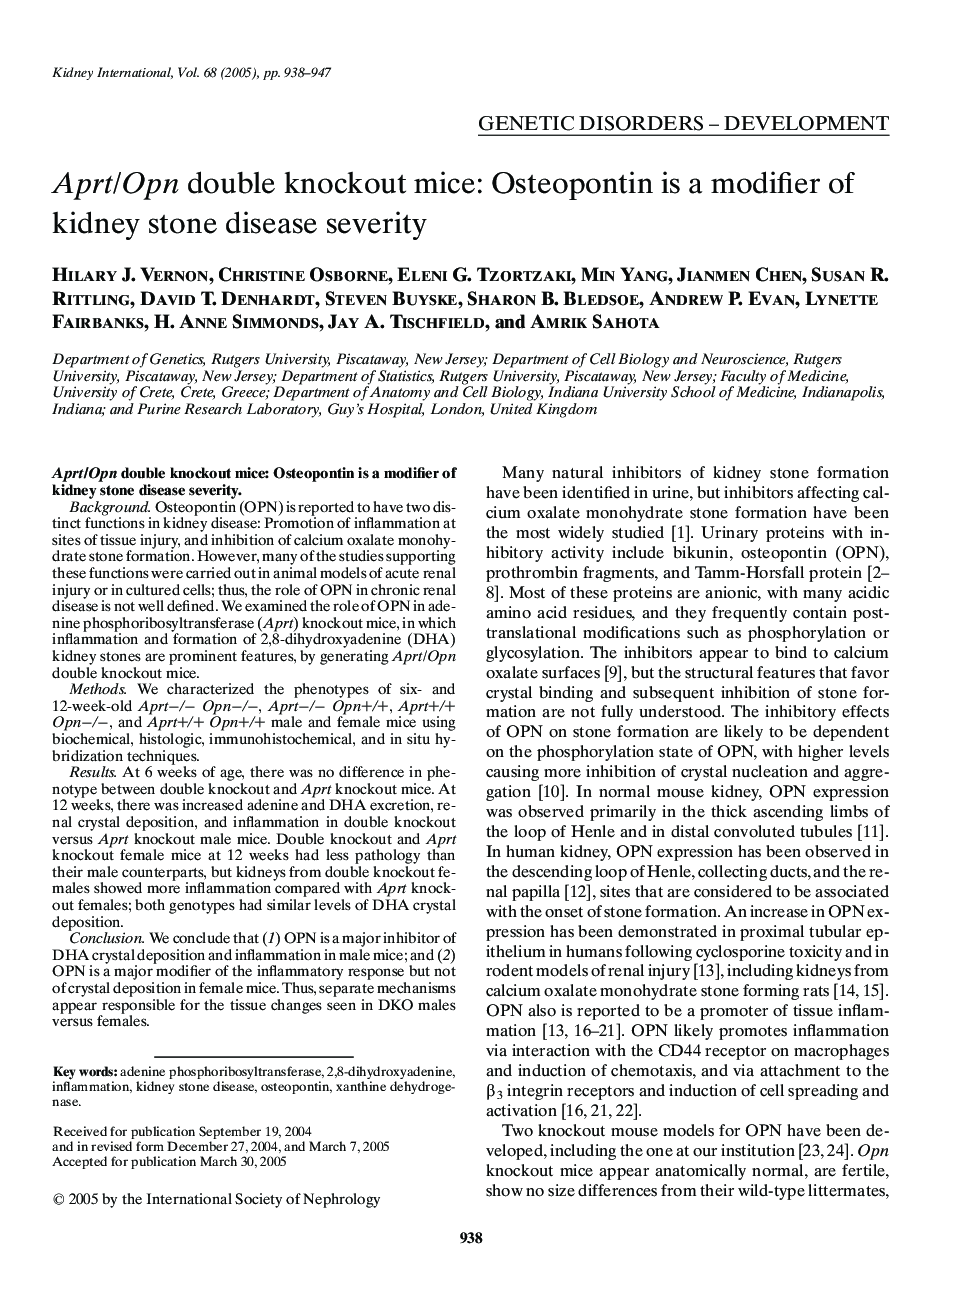 Aprt/Opn double knockout mice: Osteopontin is a modifier of kidney stone disease severity